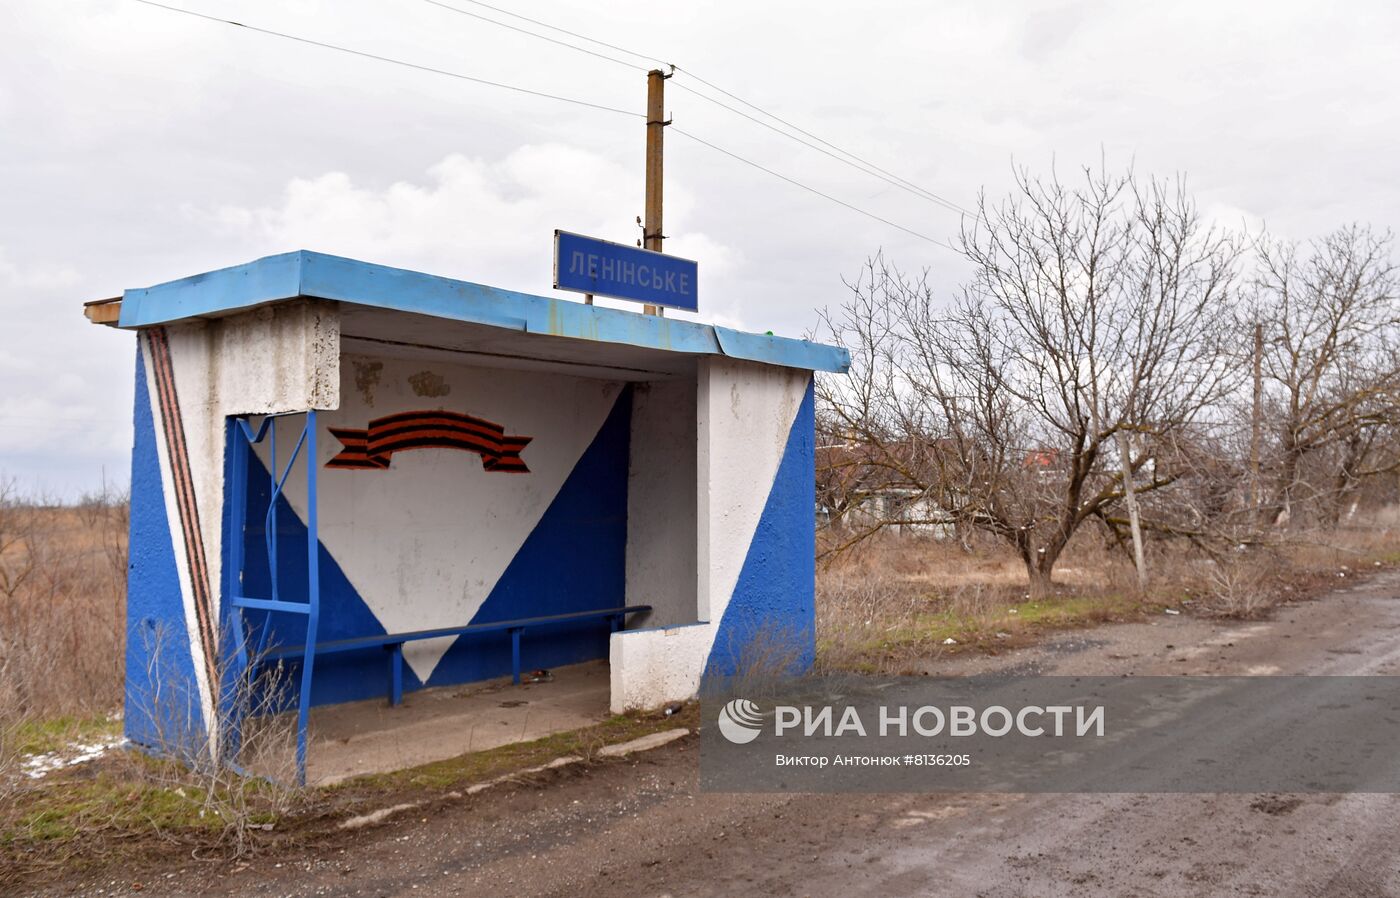 Жизнь в освобожденных селах ДНР